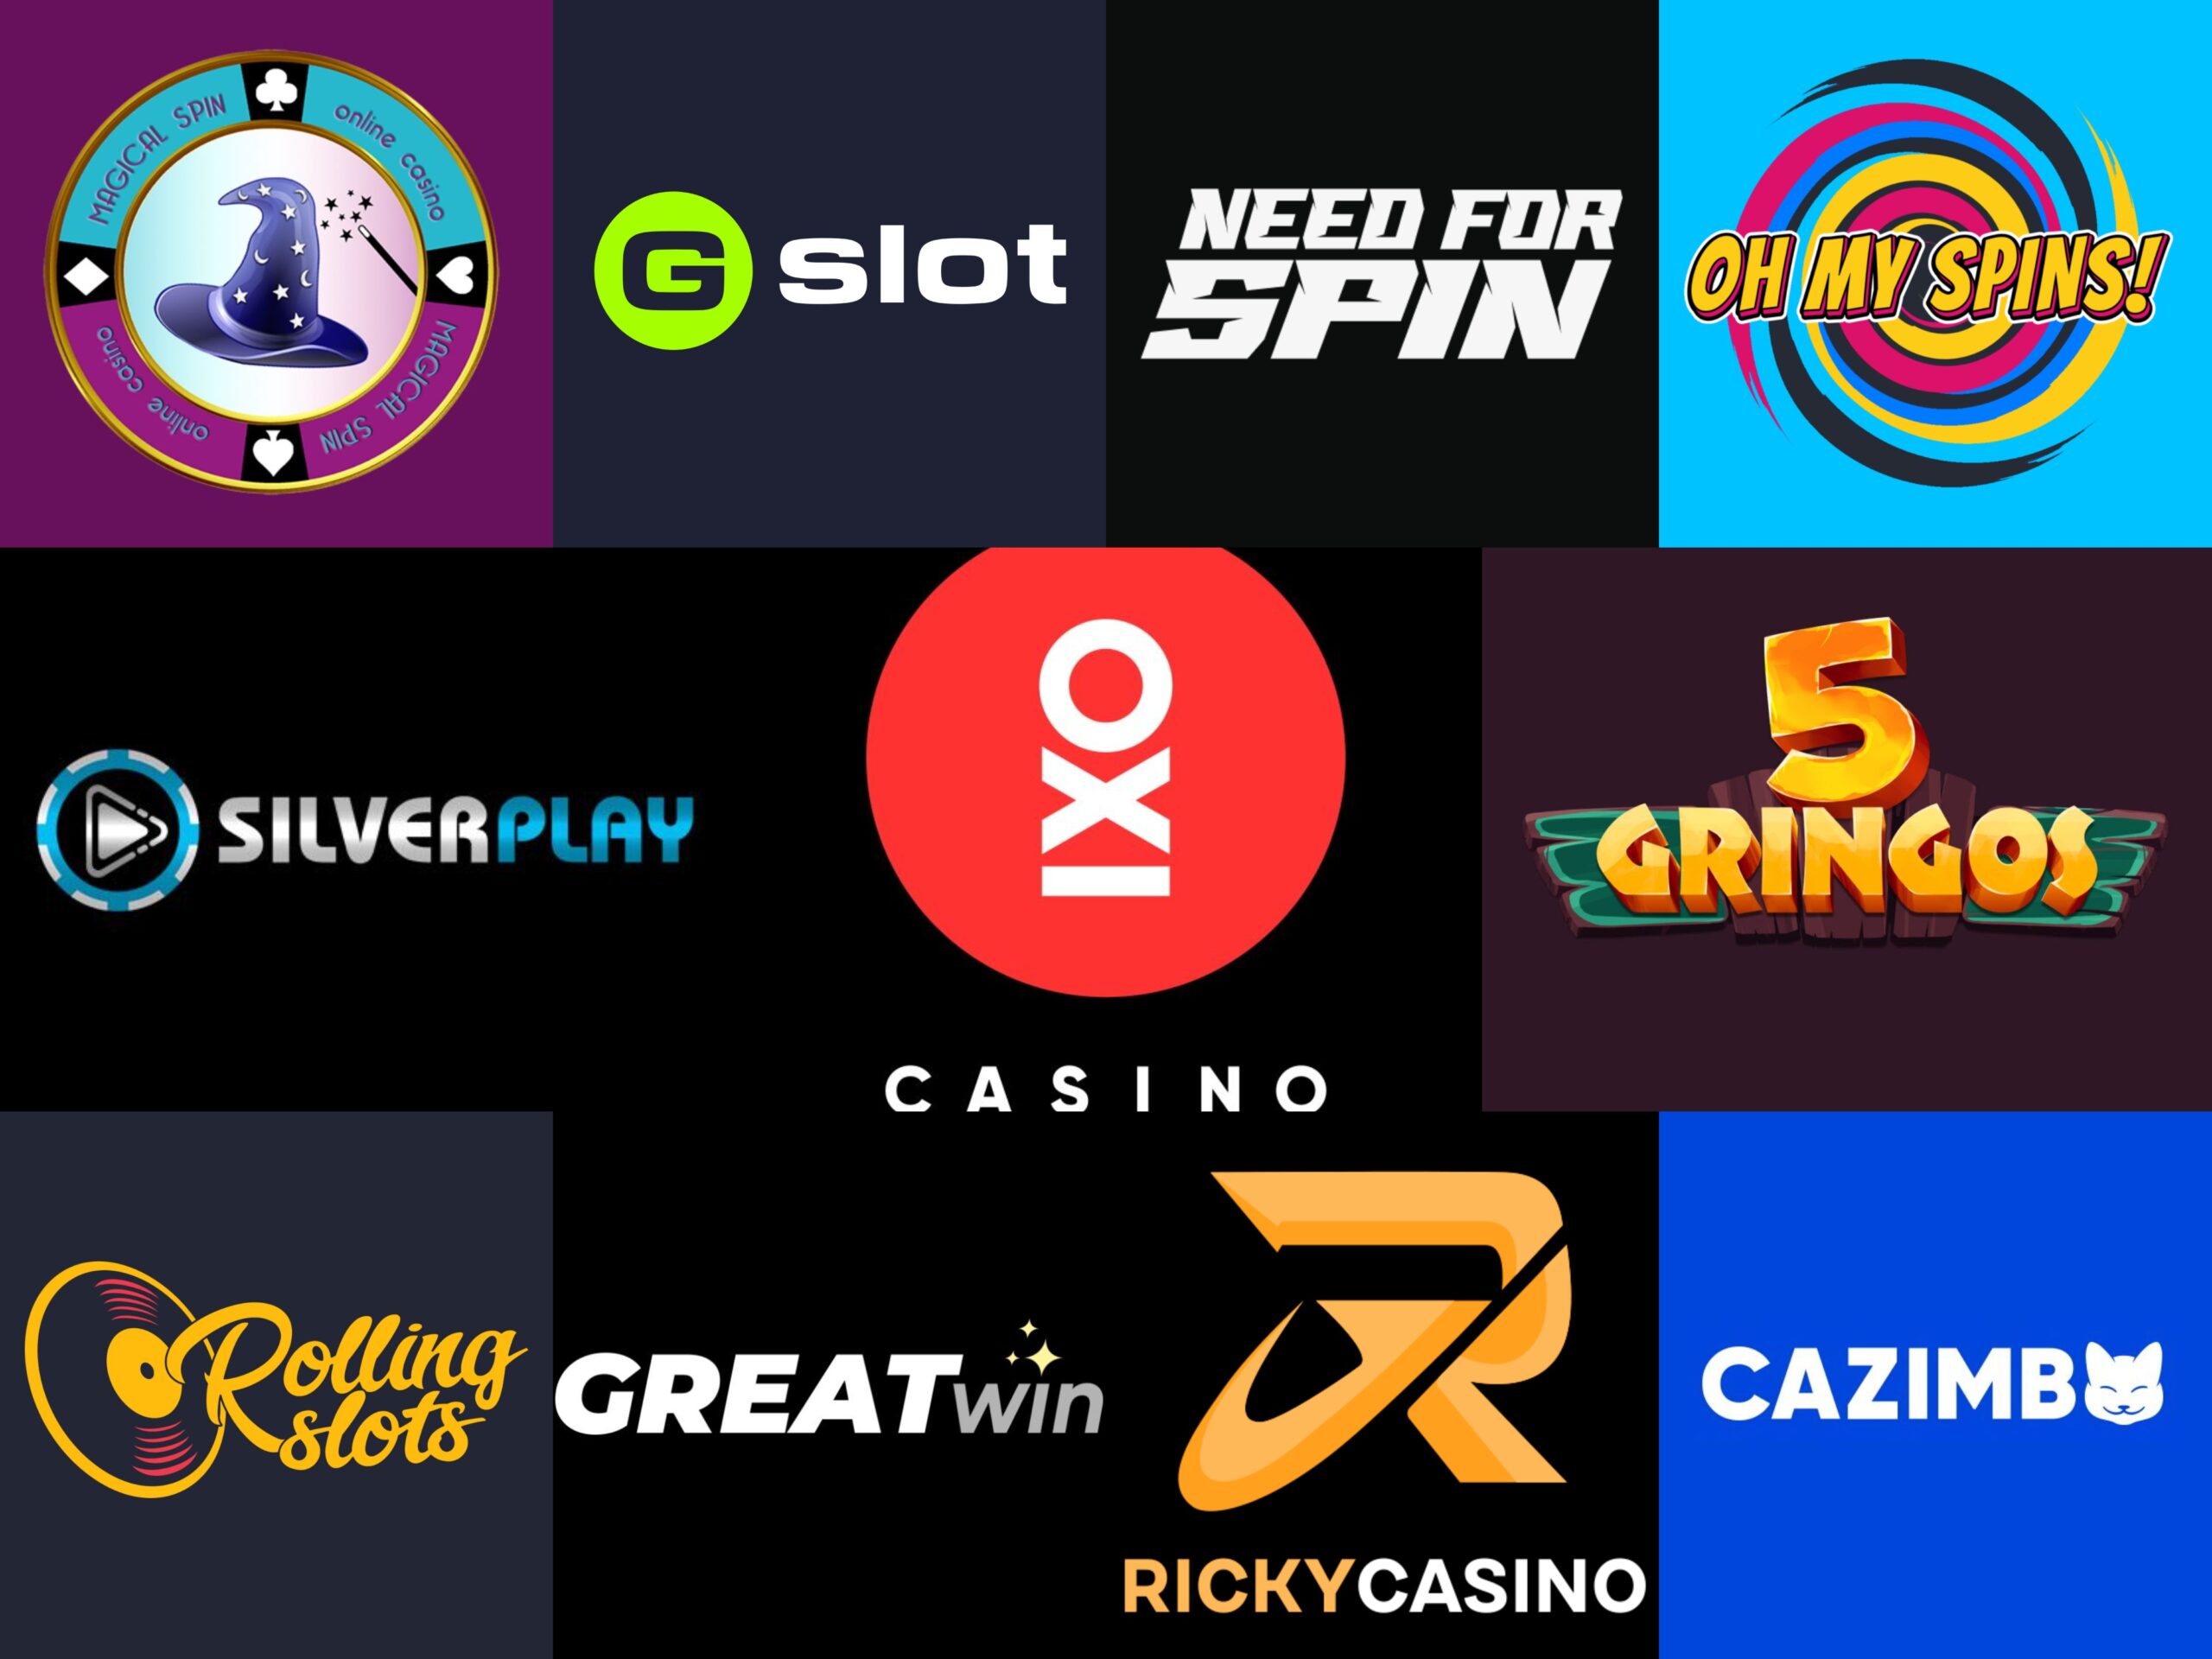 Online Casinos seriös: Brauchen Sie es wirklich? Dies wird Ihnen bei der Entscheidung helfen!